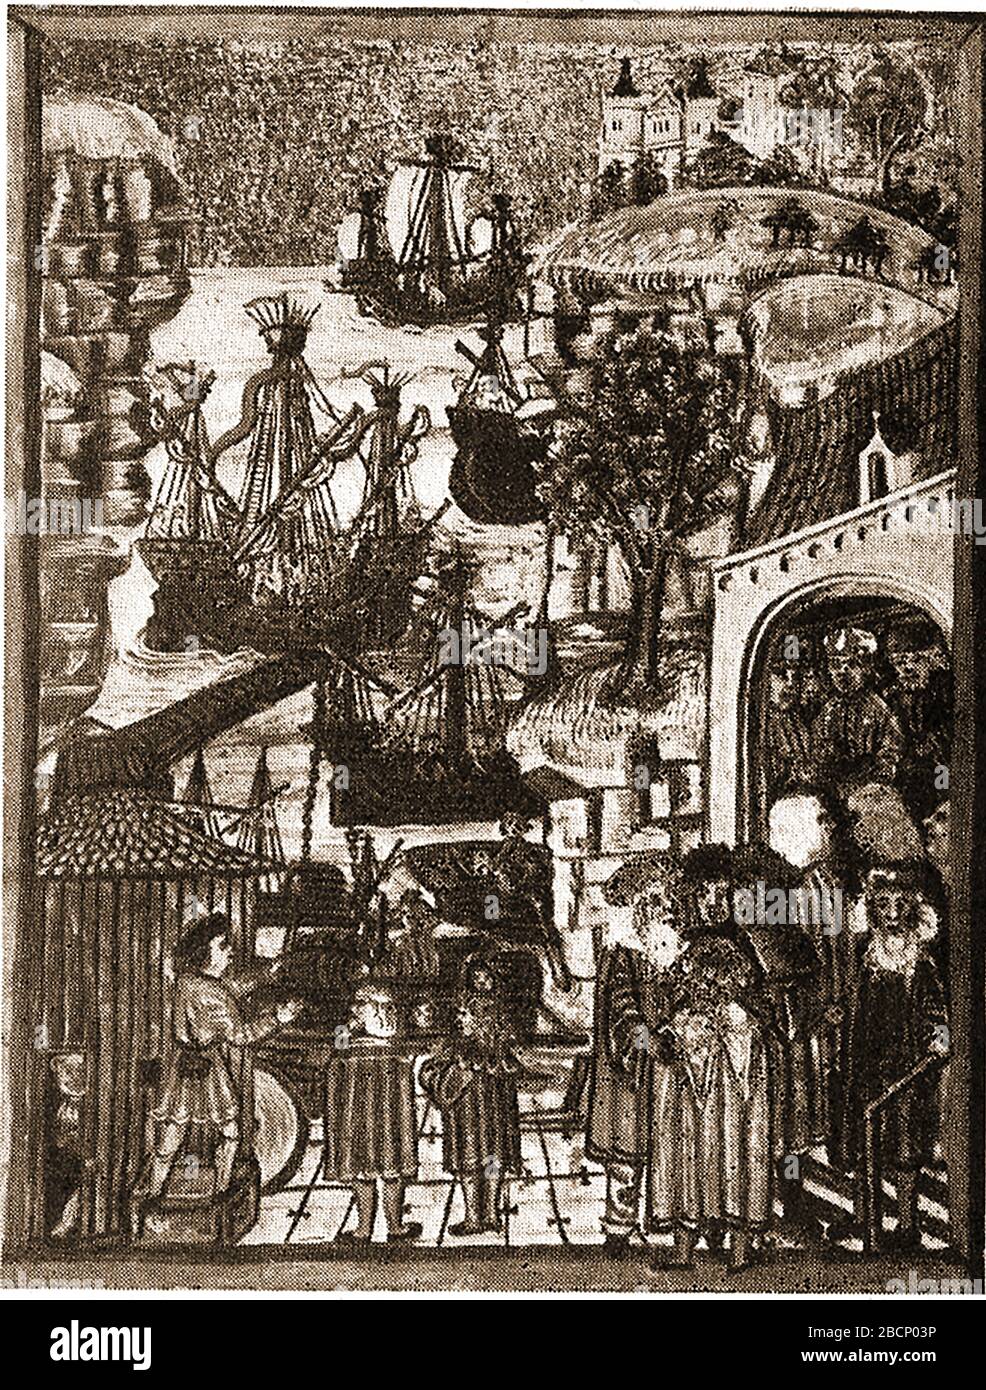 Illustration aus dem 15. Jahrhundert - HANSA HAT HANDELSLEUTE der Hanse bei HAMBURG. Hanse rief später als Hansa an,[3] war das althochdeutsche Wort für einen Konvoi von Händlern auf Land oder auf See. Stockfoto